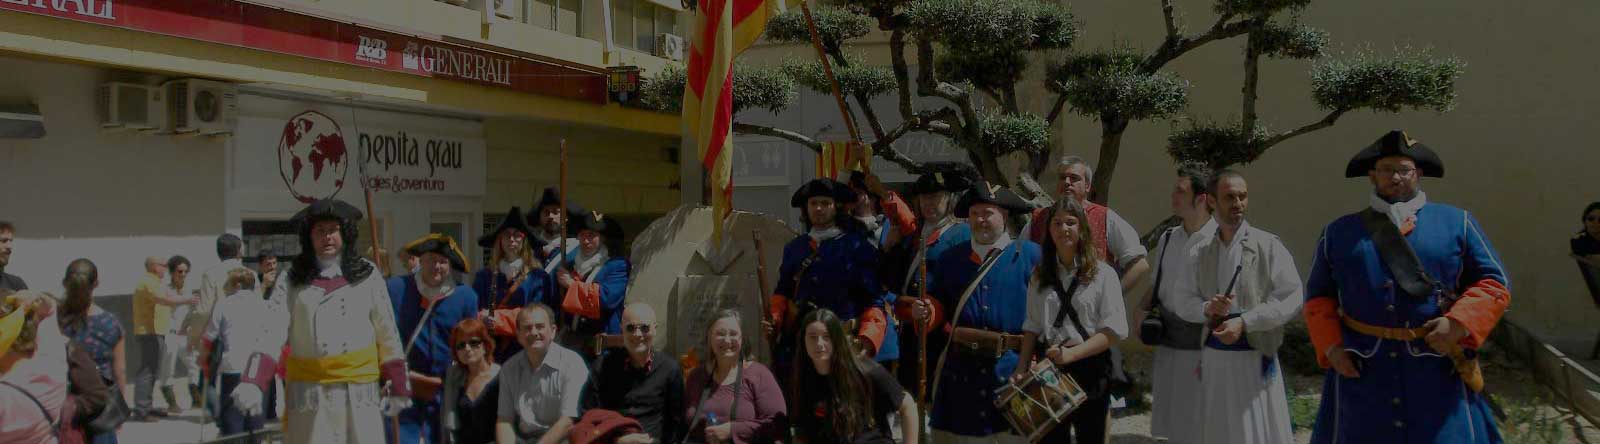 Viatge a Xàtiva en la commemoració del 25 d’abril